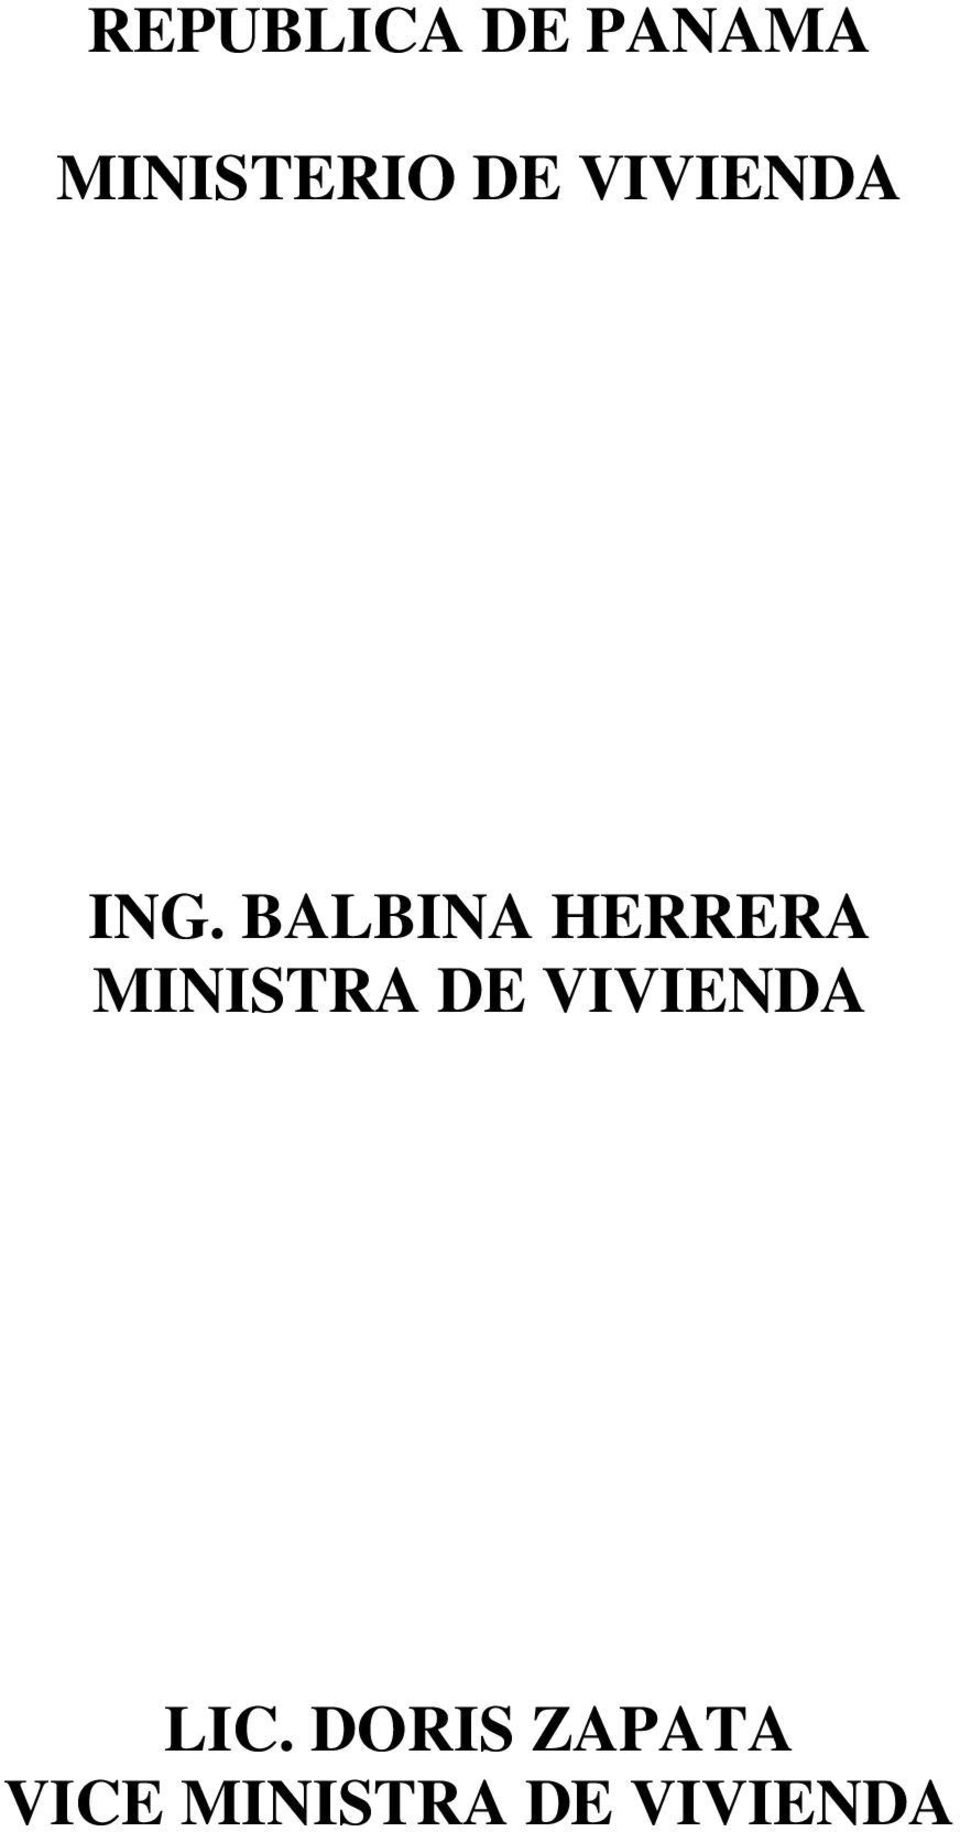 BALBINA HERRERA MINISTRA